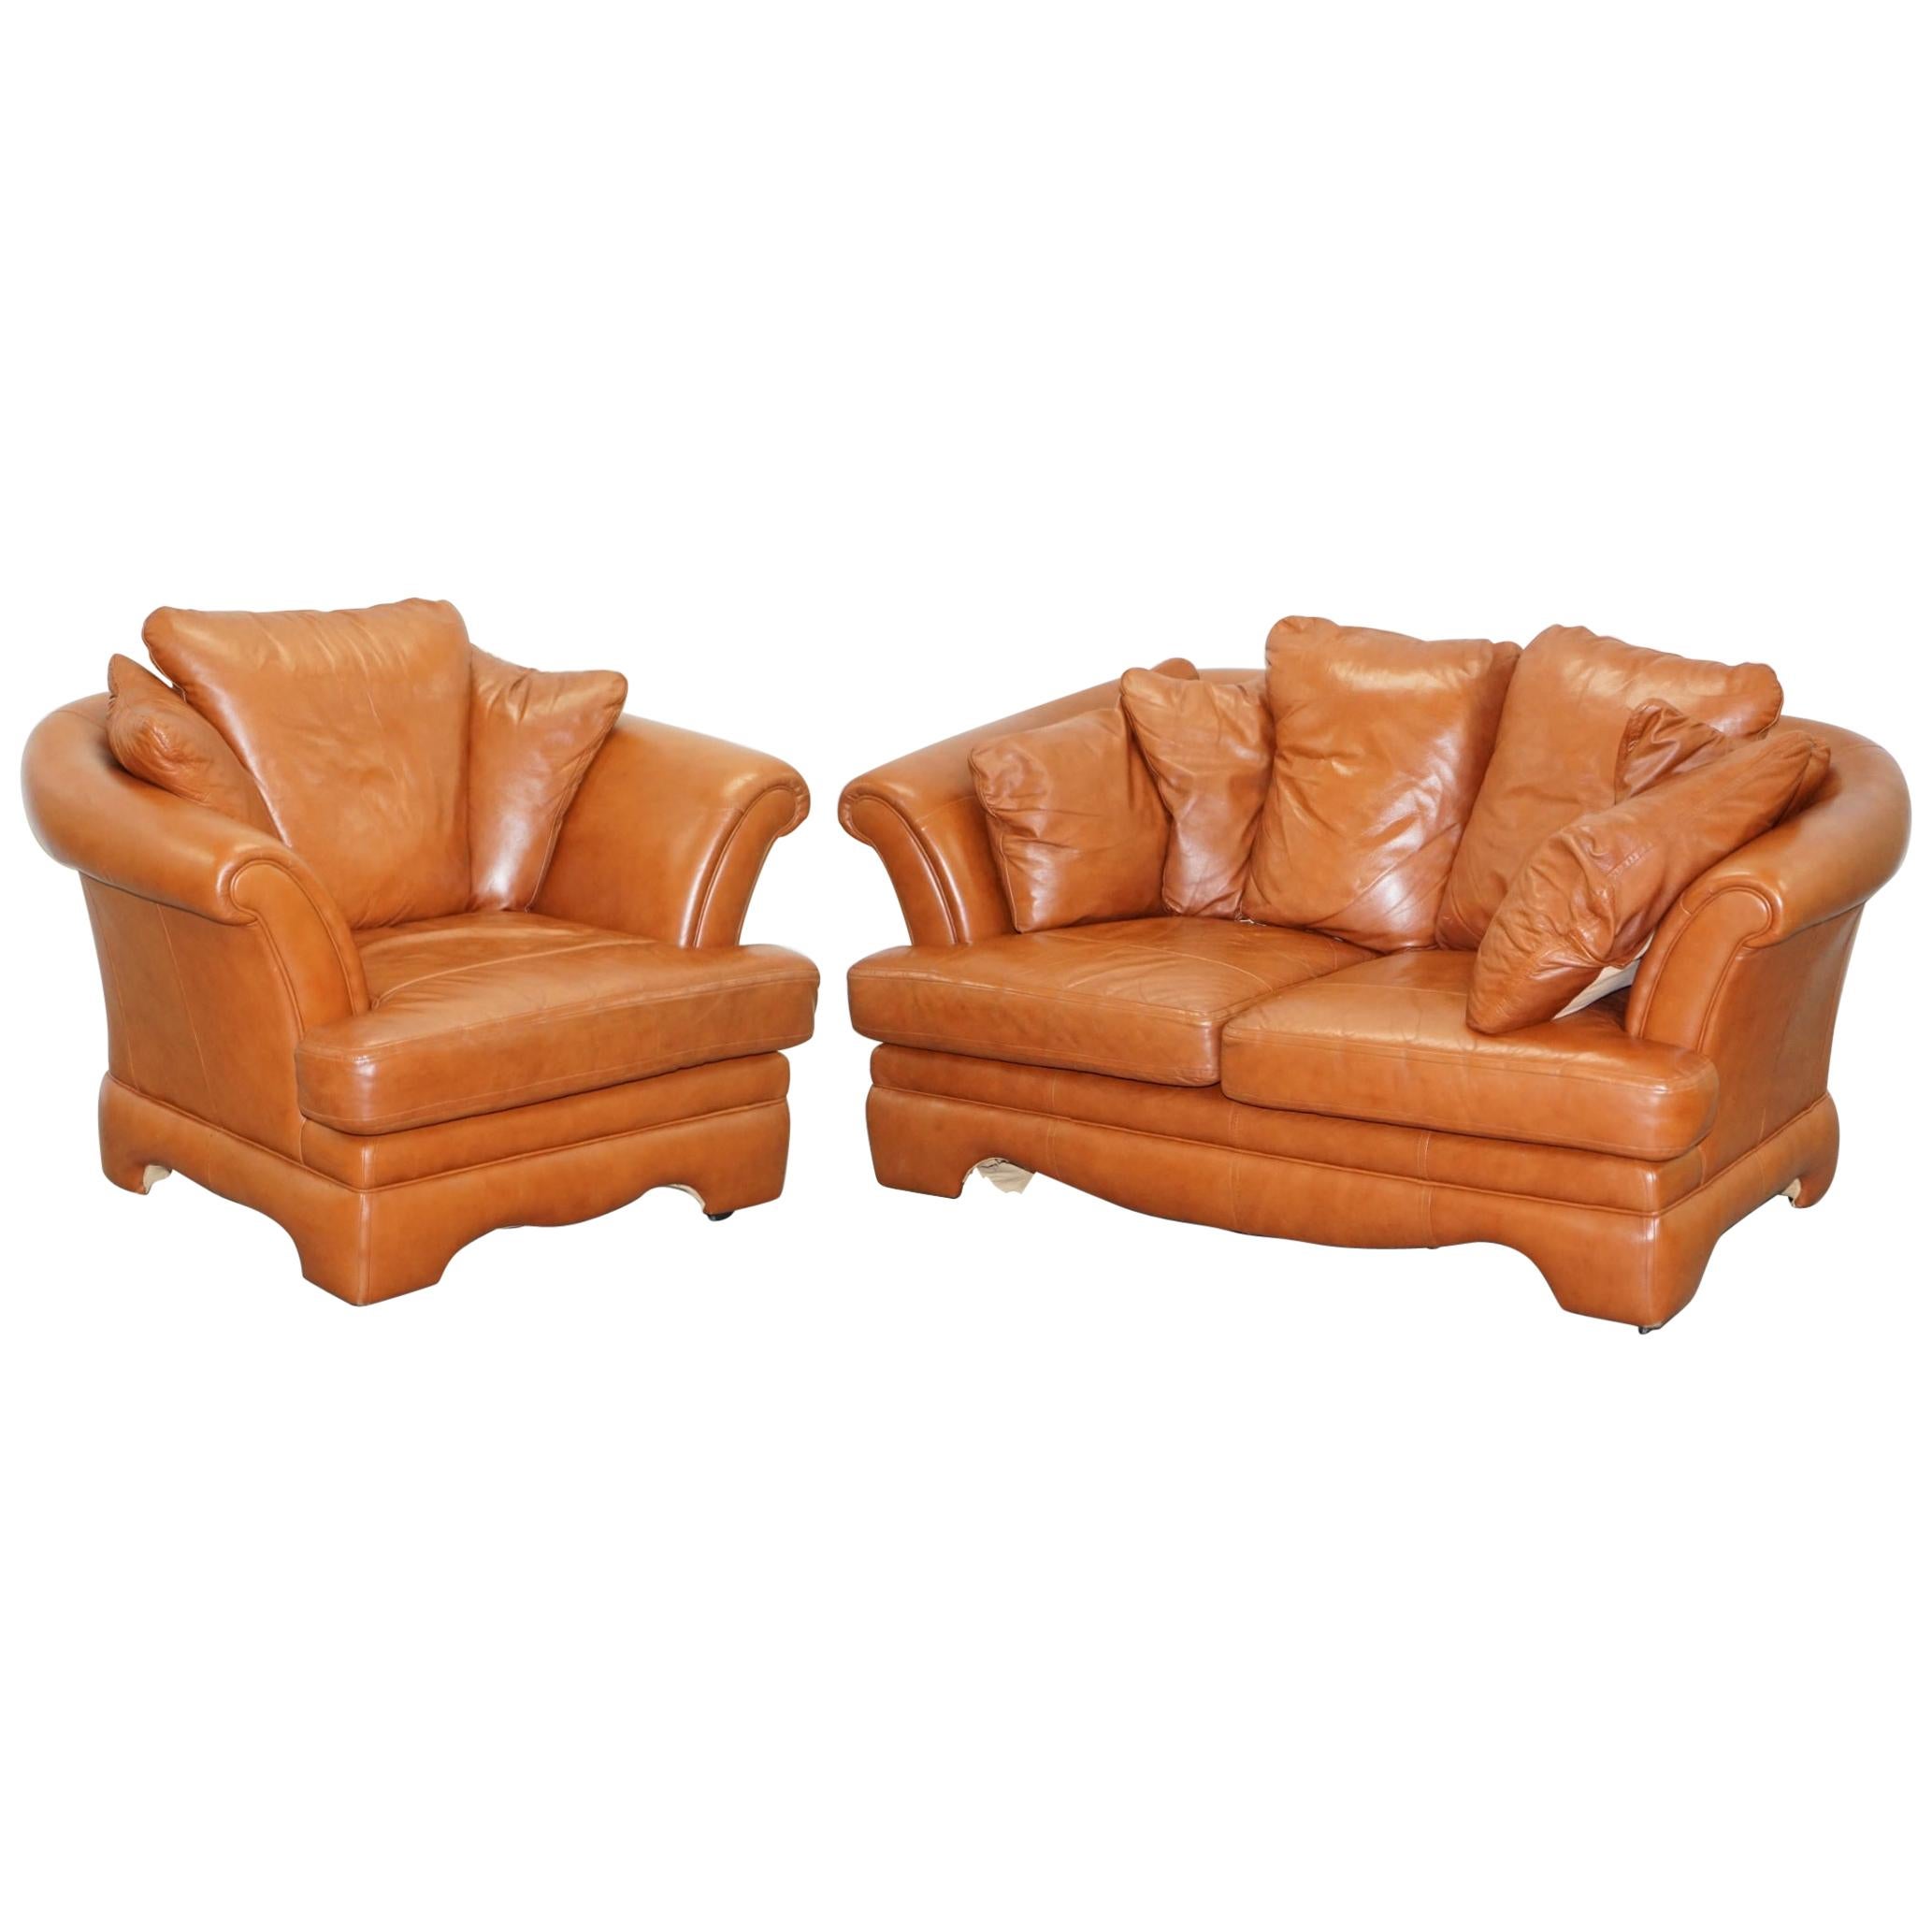 Ravissant petit canapé en cuir brun clair vieilli et ensemble de deux pièces de fauteuils assortis en vente